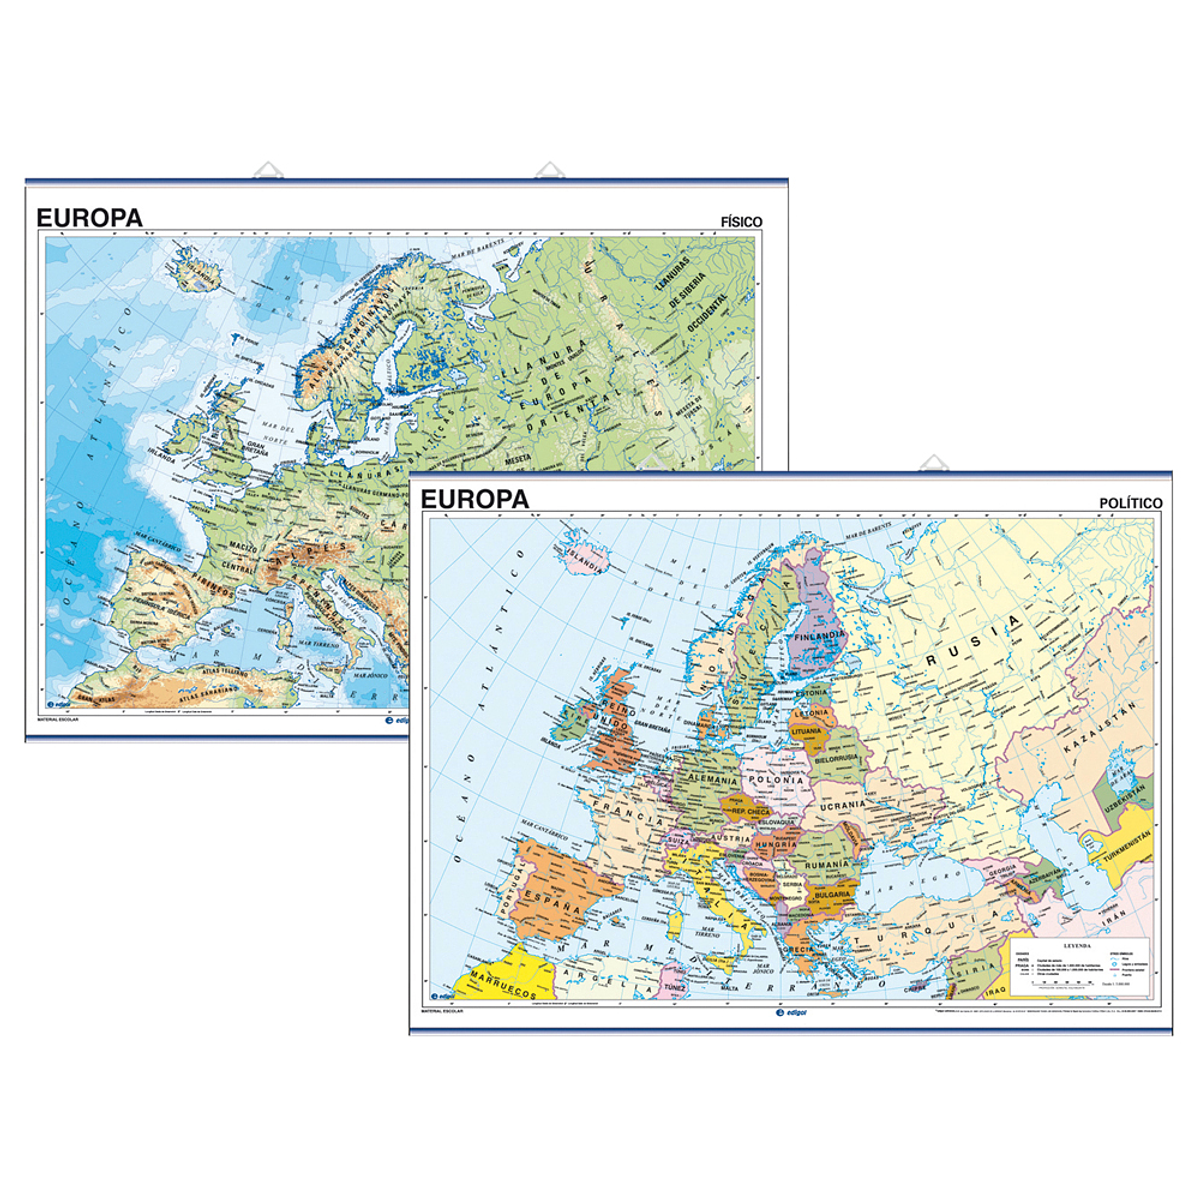 Mapa mural europa fisico/politico -140 x 100 cm